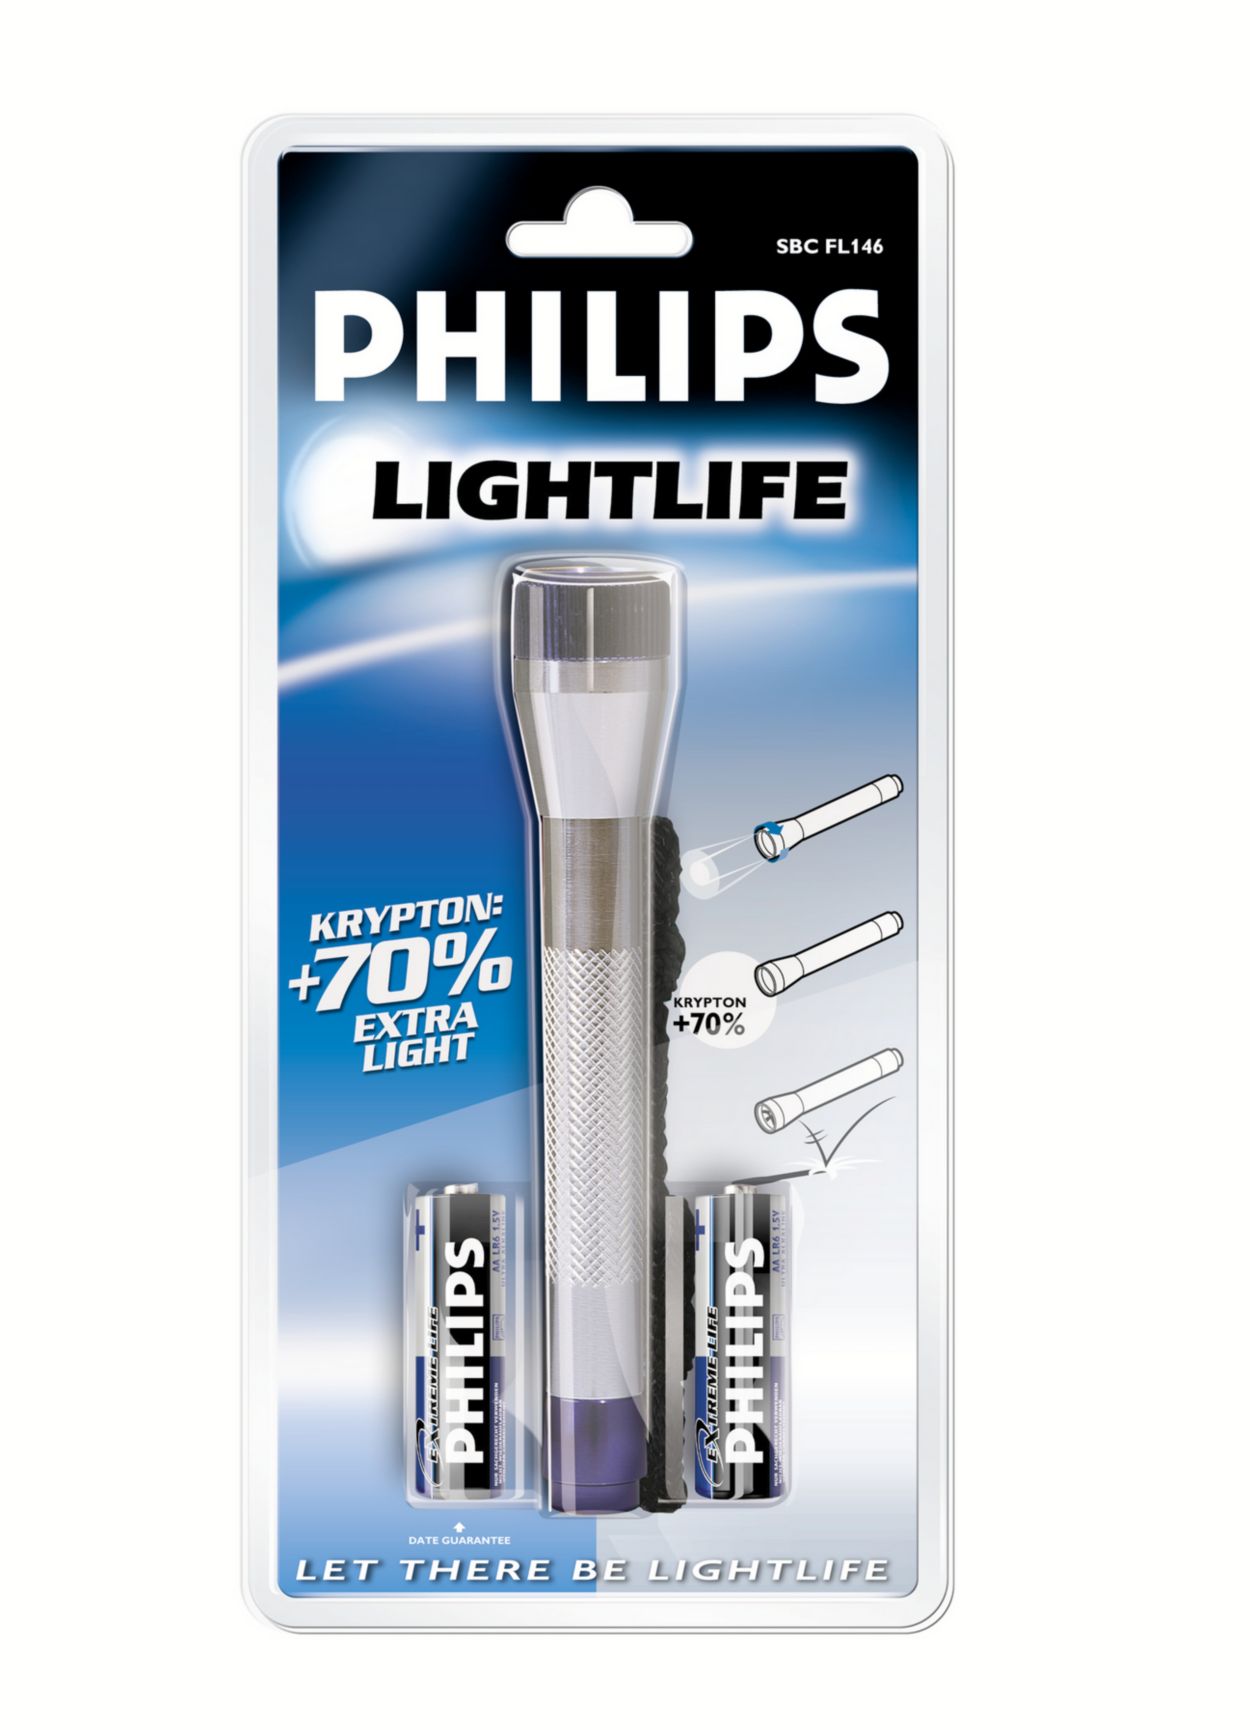 Б филипс. Фонарь Philips Lightlife. Philips sbcfl126/01b. Фонарь Philips трофейный. Philips SFL 8468.